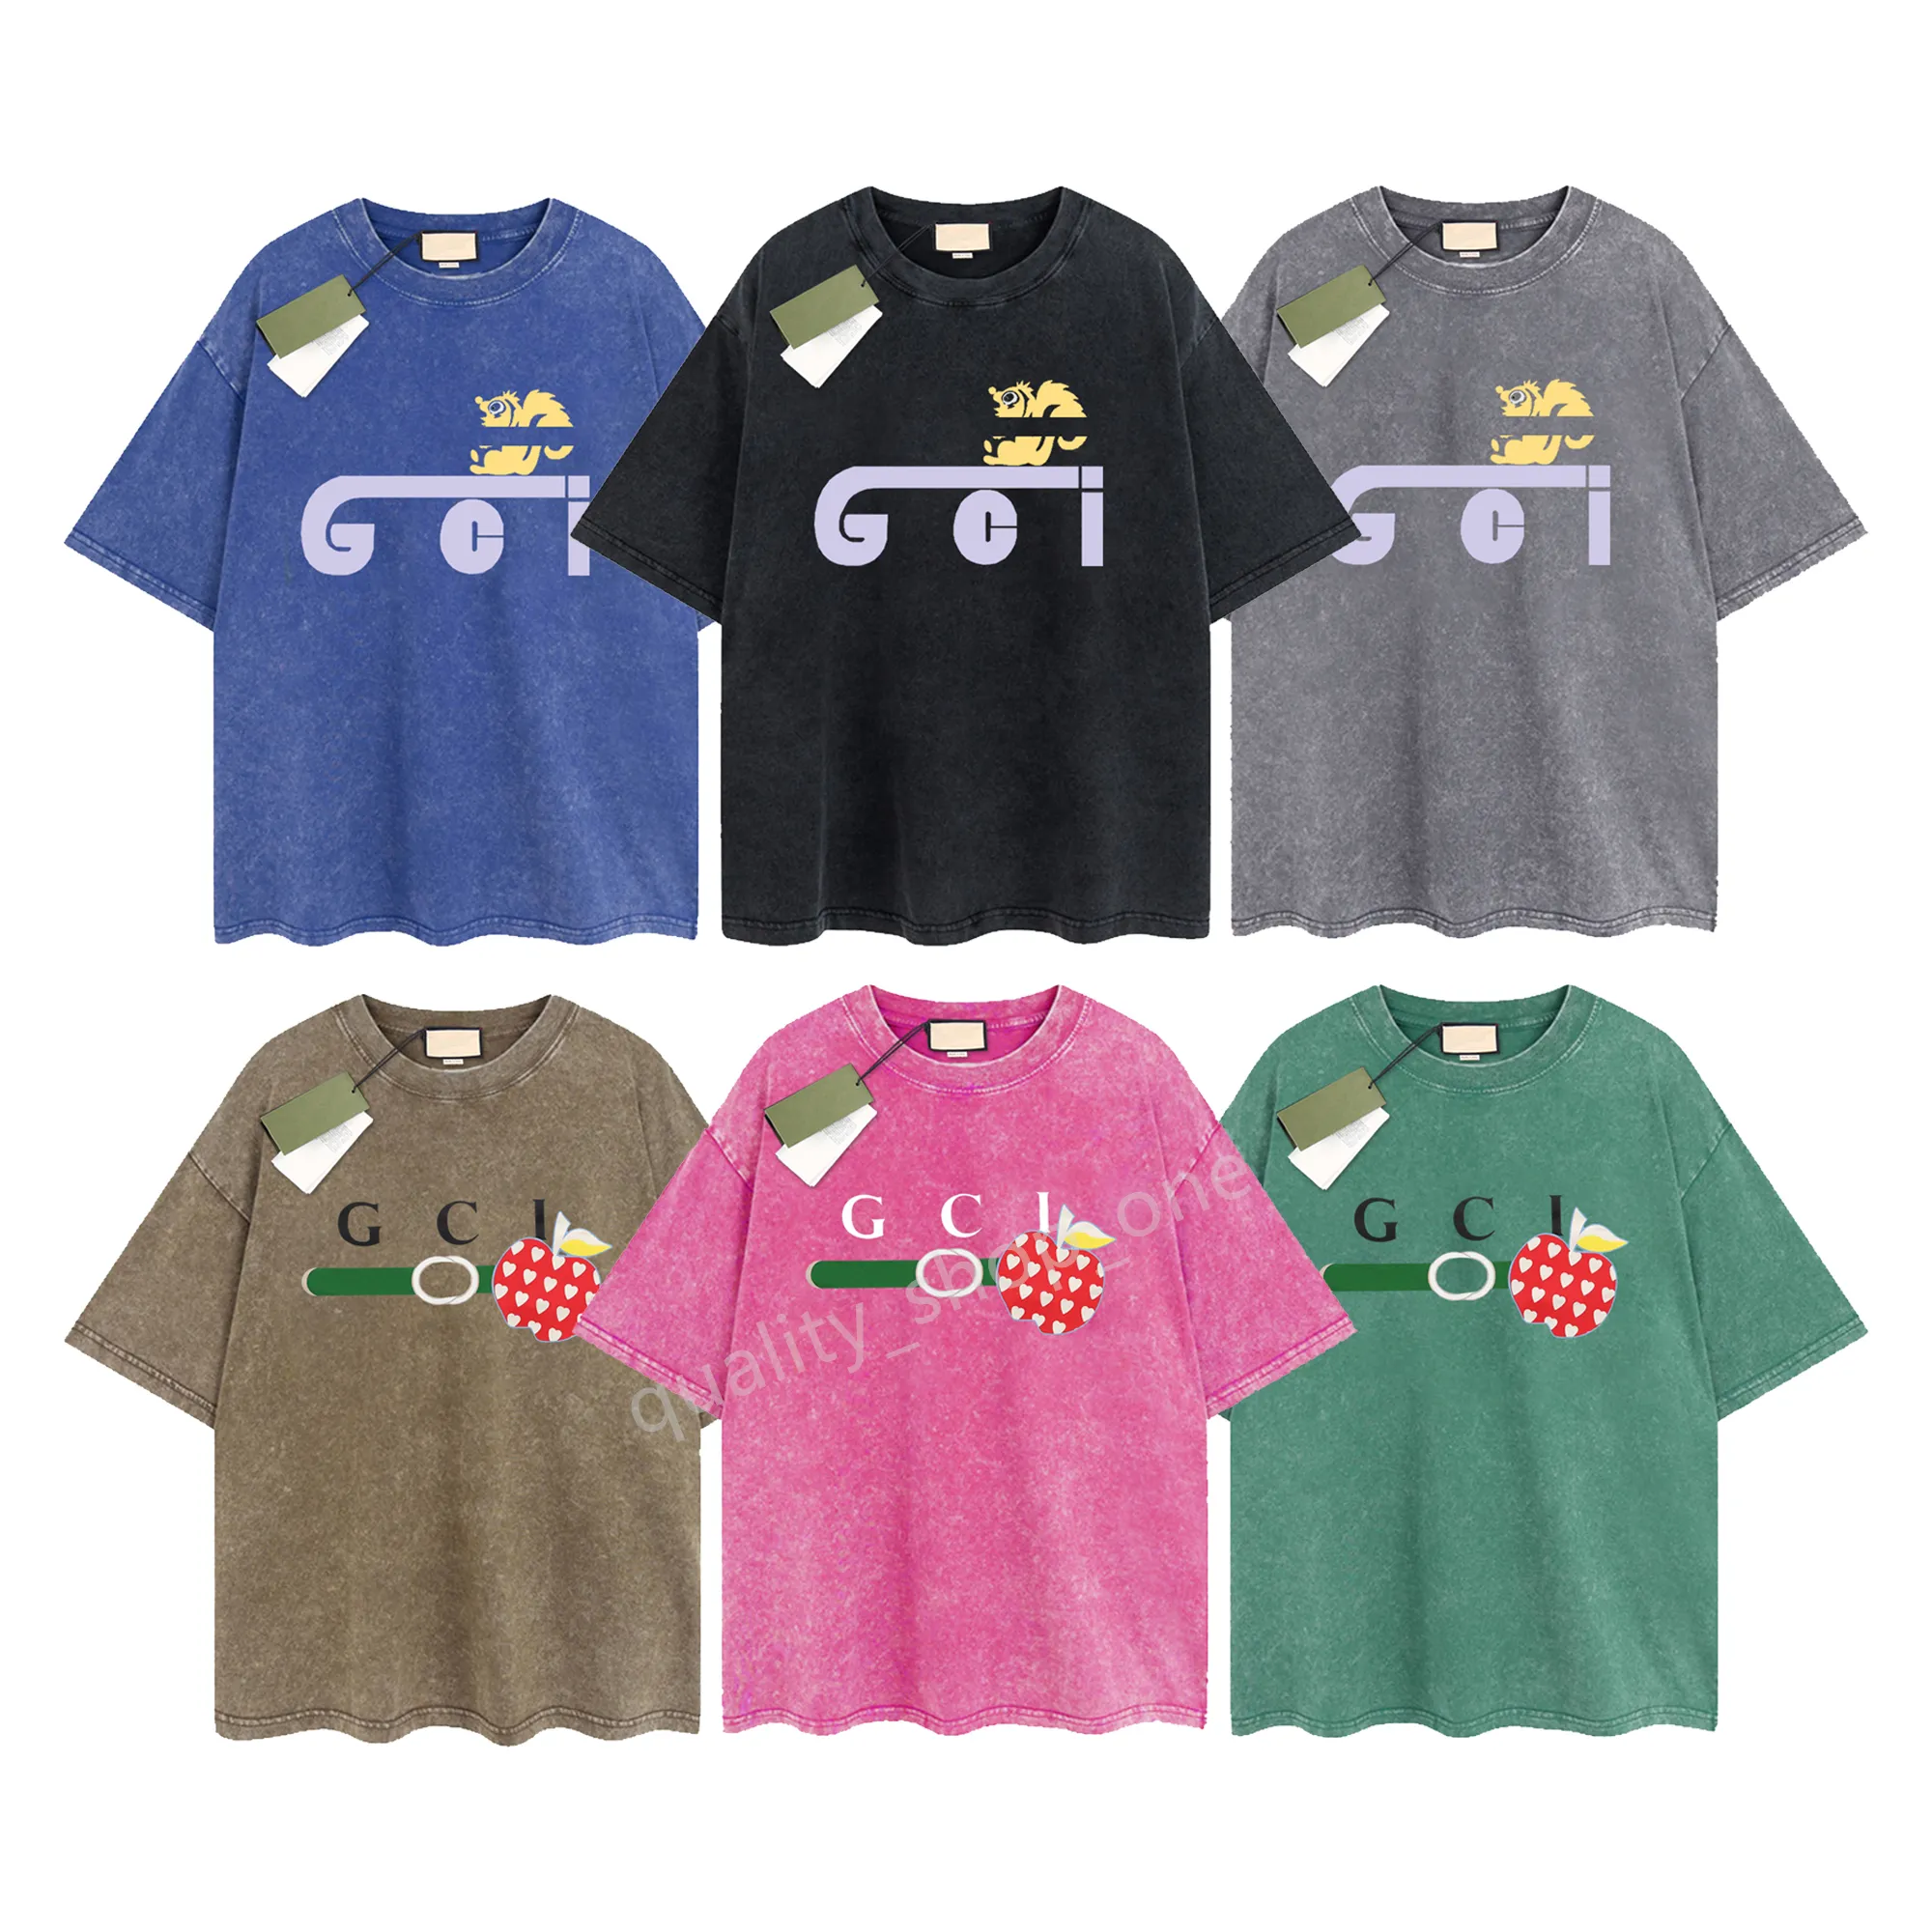 Erkek Tasarımcı Gu T-Shirt Vintage Retro Yıkalı Gömlek Lüks Marka Tişörtleri Kadınlar Kısa Kol Tişört Yaz Nedensel Tees Hip Hop Üstler Şortlar Kıyafetler Çeşitli Renkler G-38